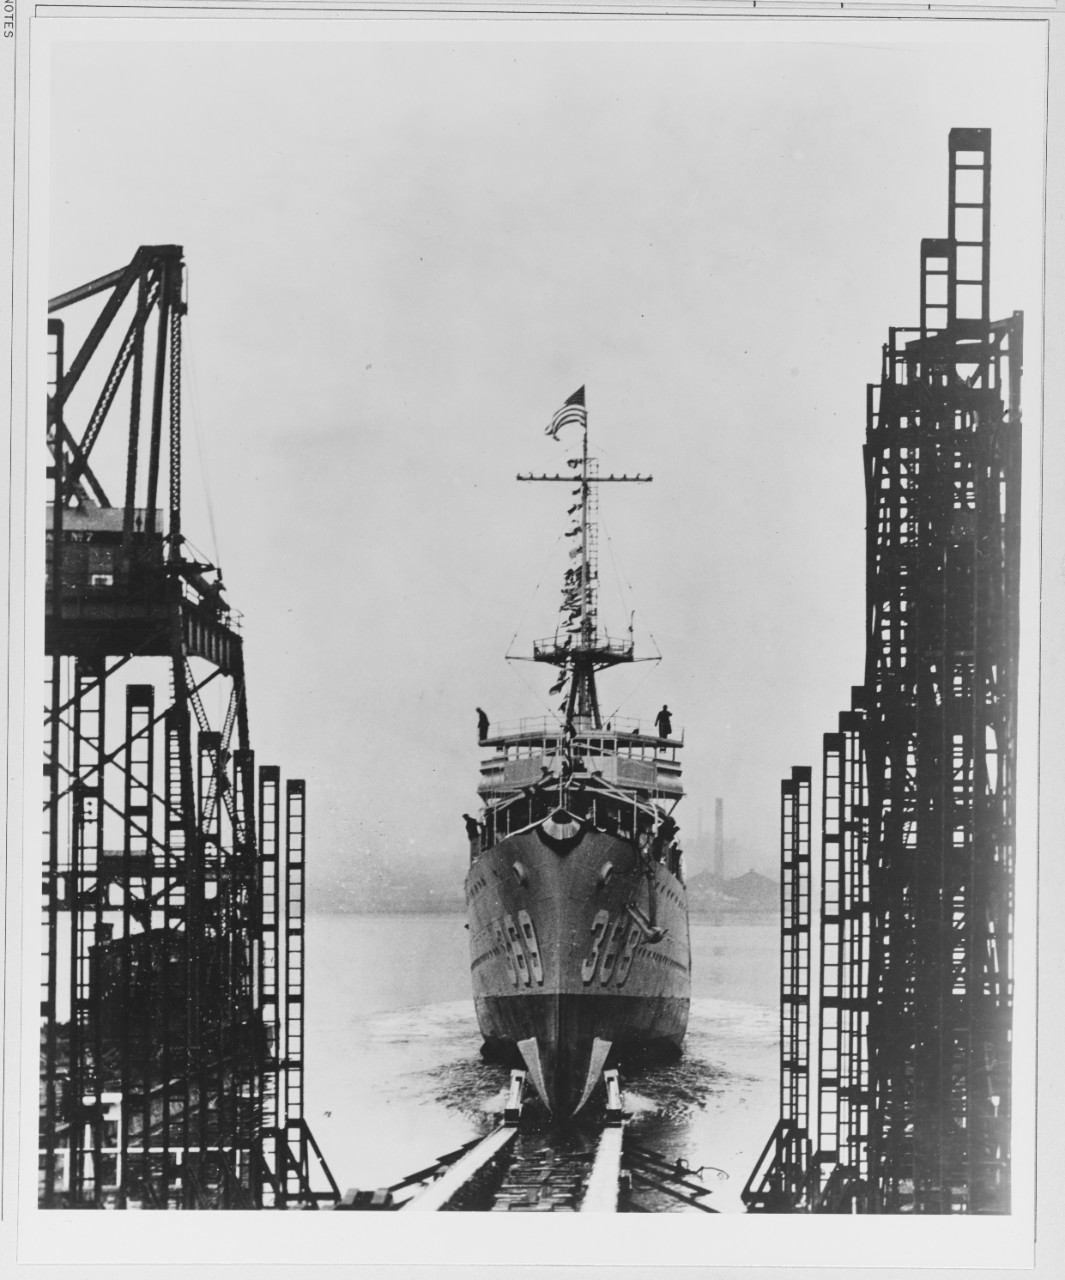 USS REID (DD-369) - Launched at Kearny, N.J., 11 Jan. 1936